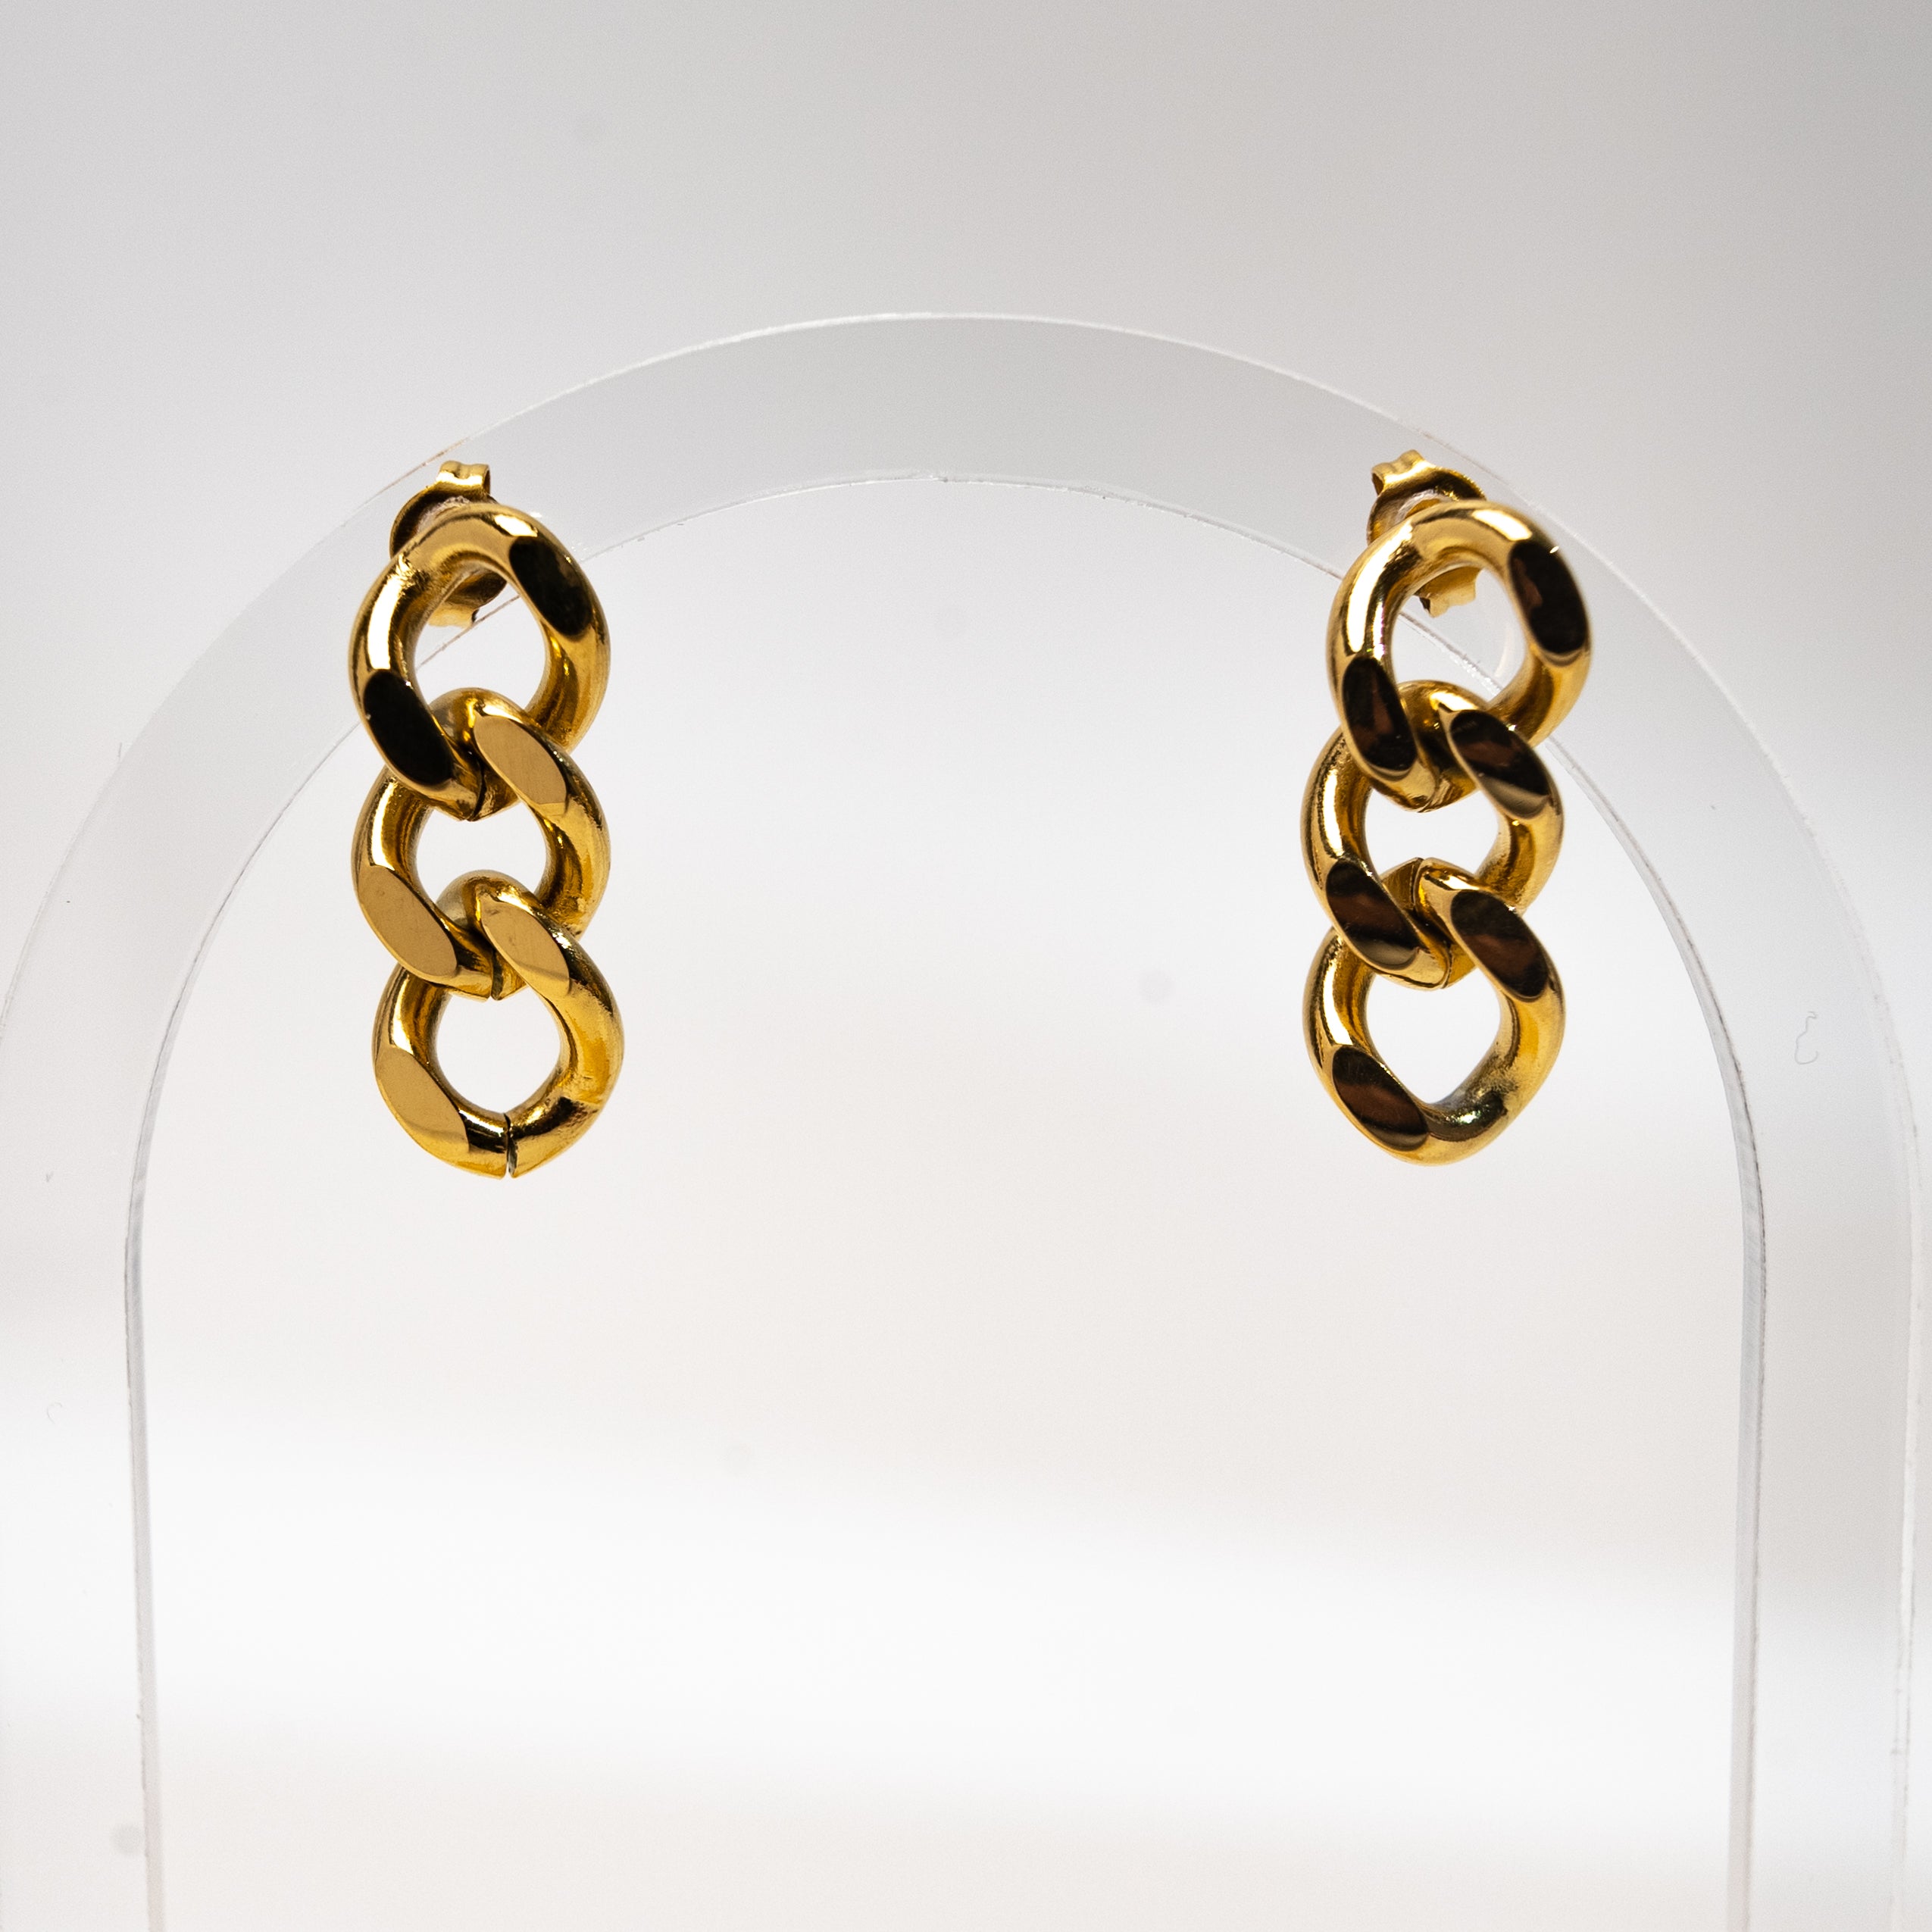 Minimalist Link Chain Earrings